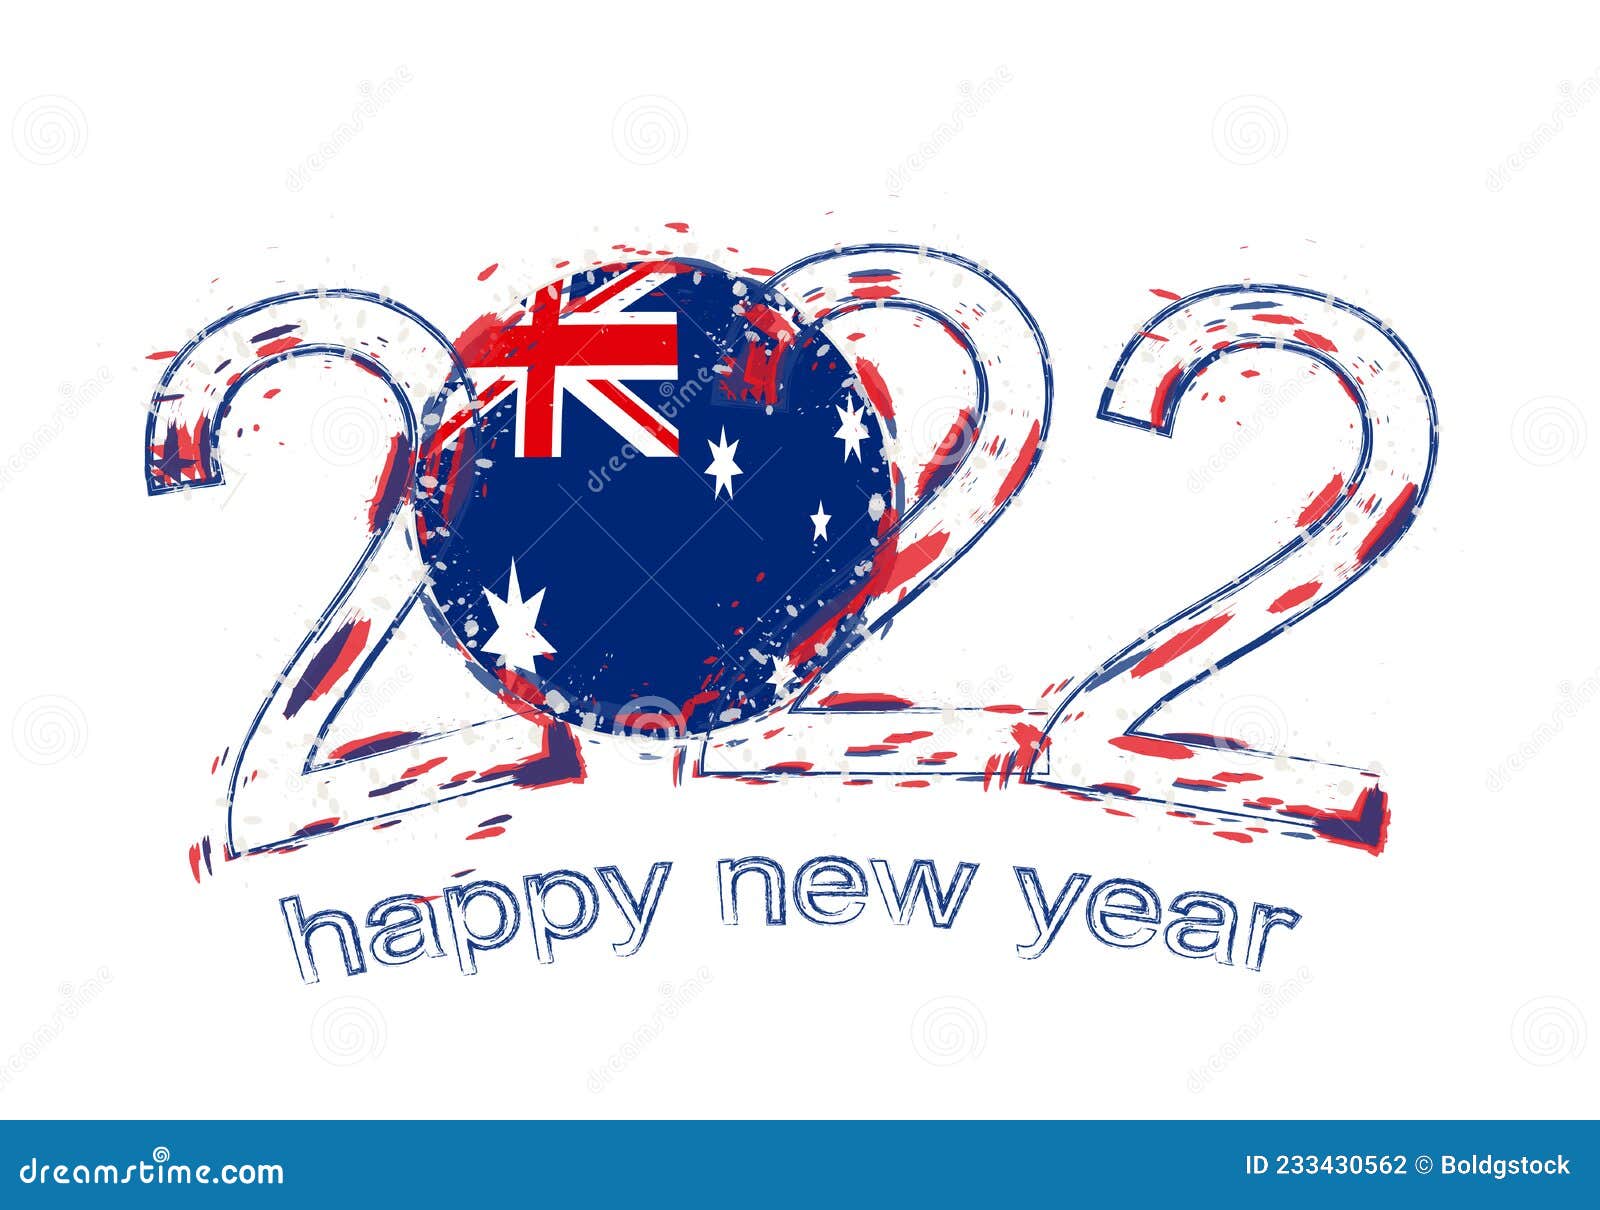 New Year 2022 Australia